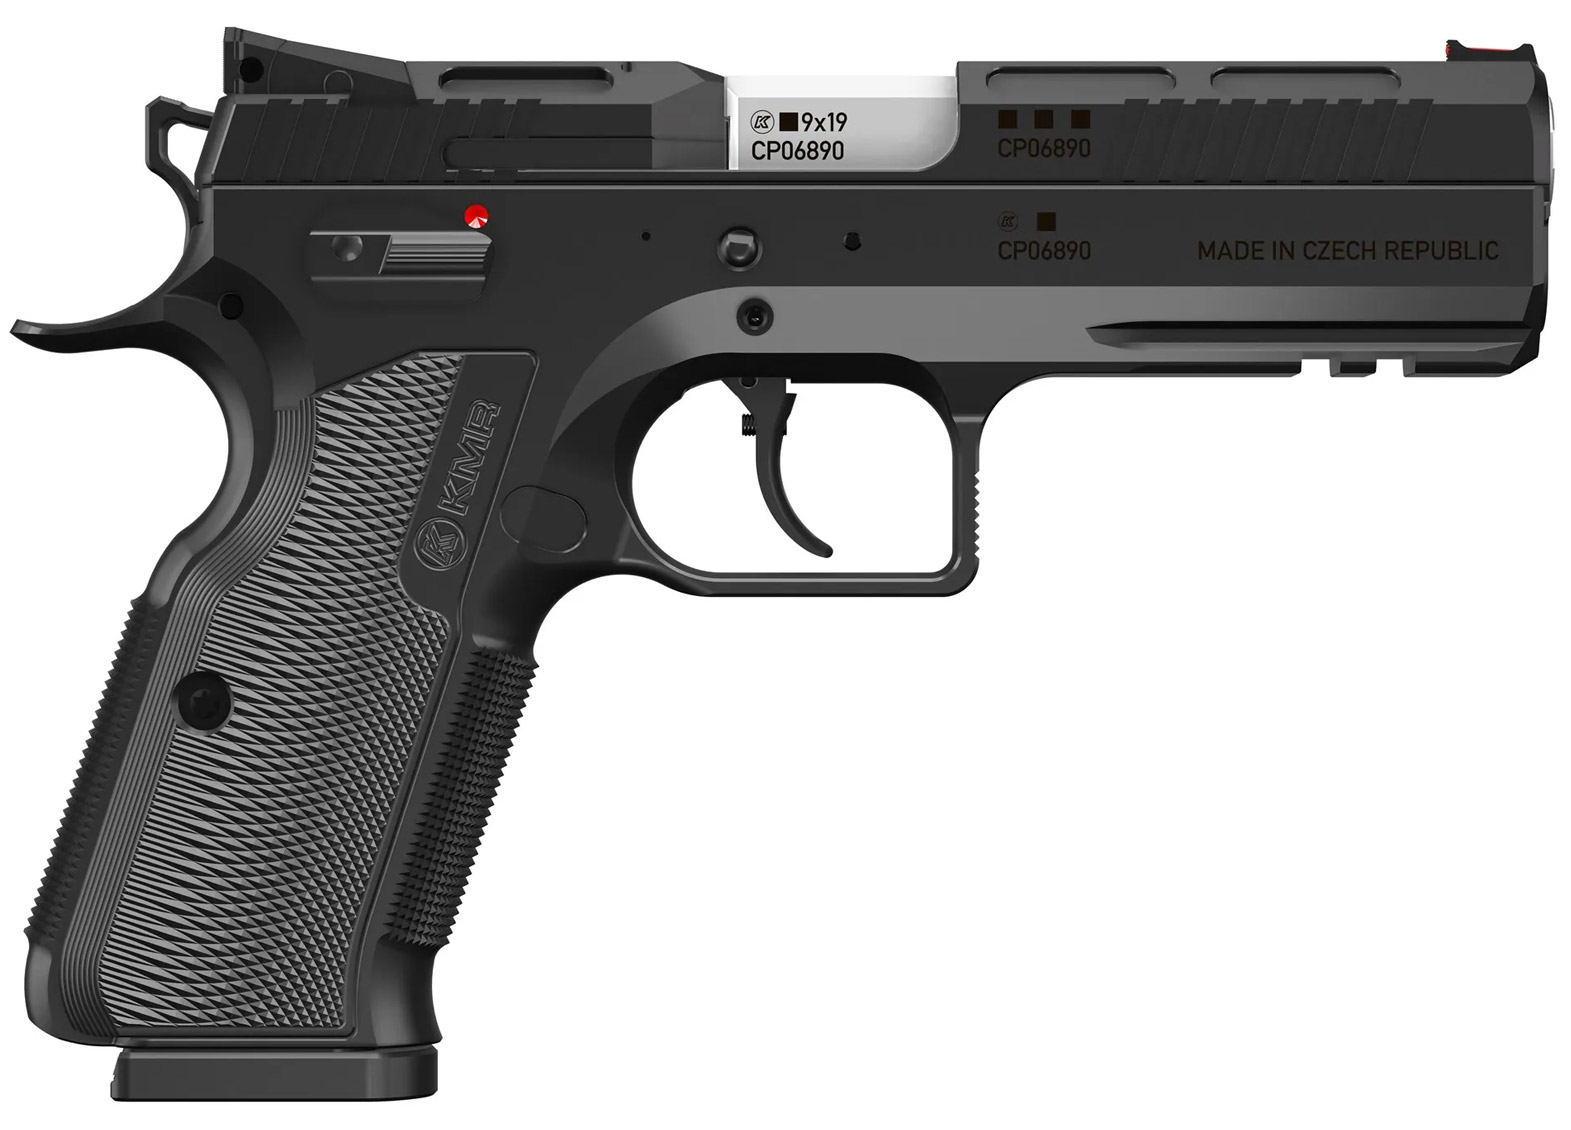 KMR W-02 Umbra LL11,4cm 9mm Luger